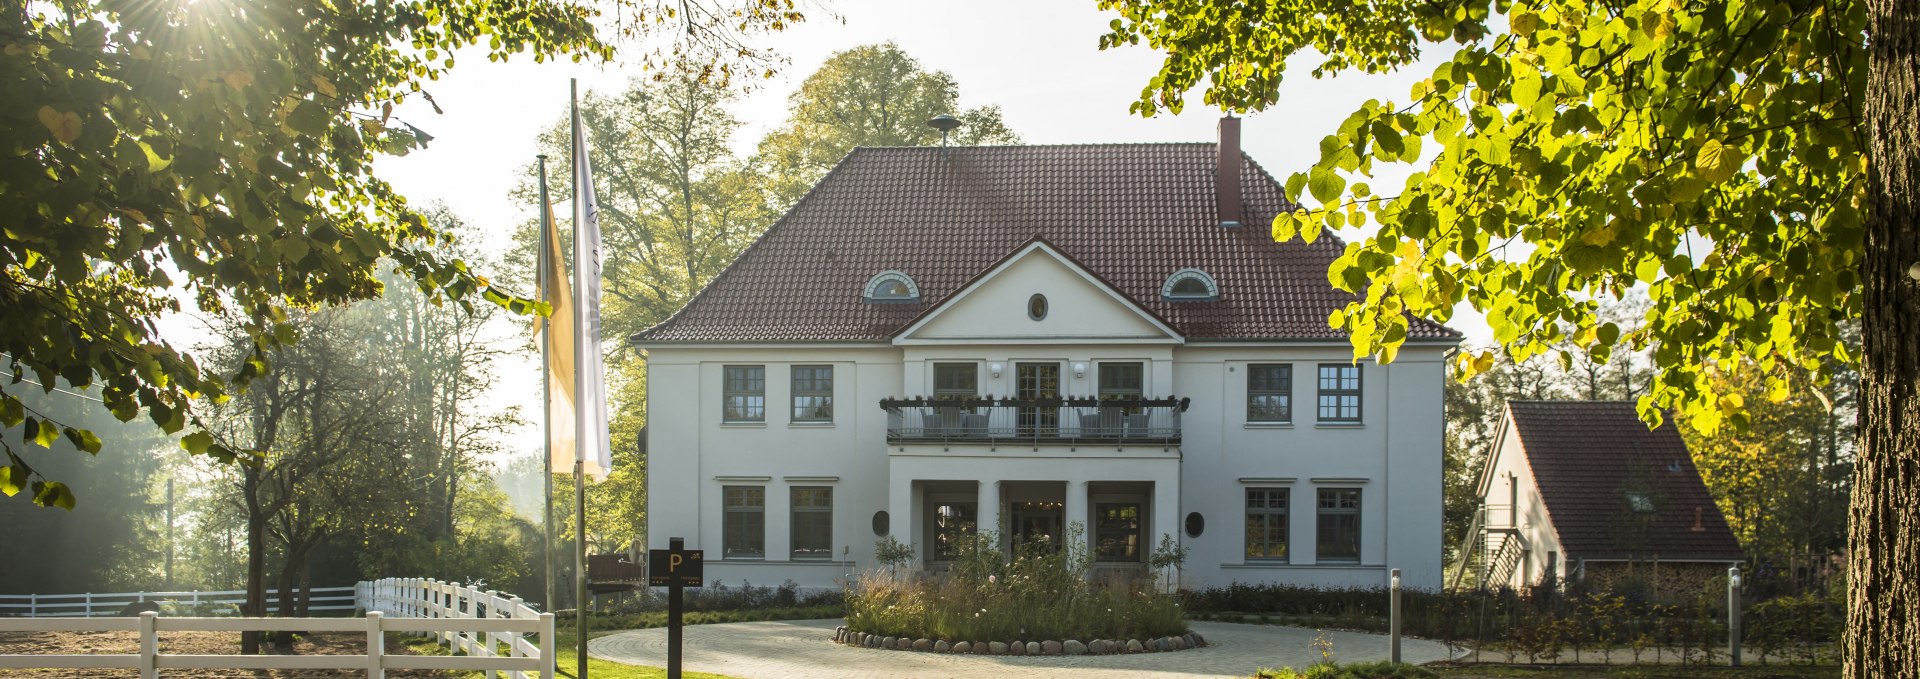 Vorbeck Manor, © Gut Vorbeck / Stefan von Stengel